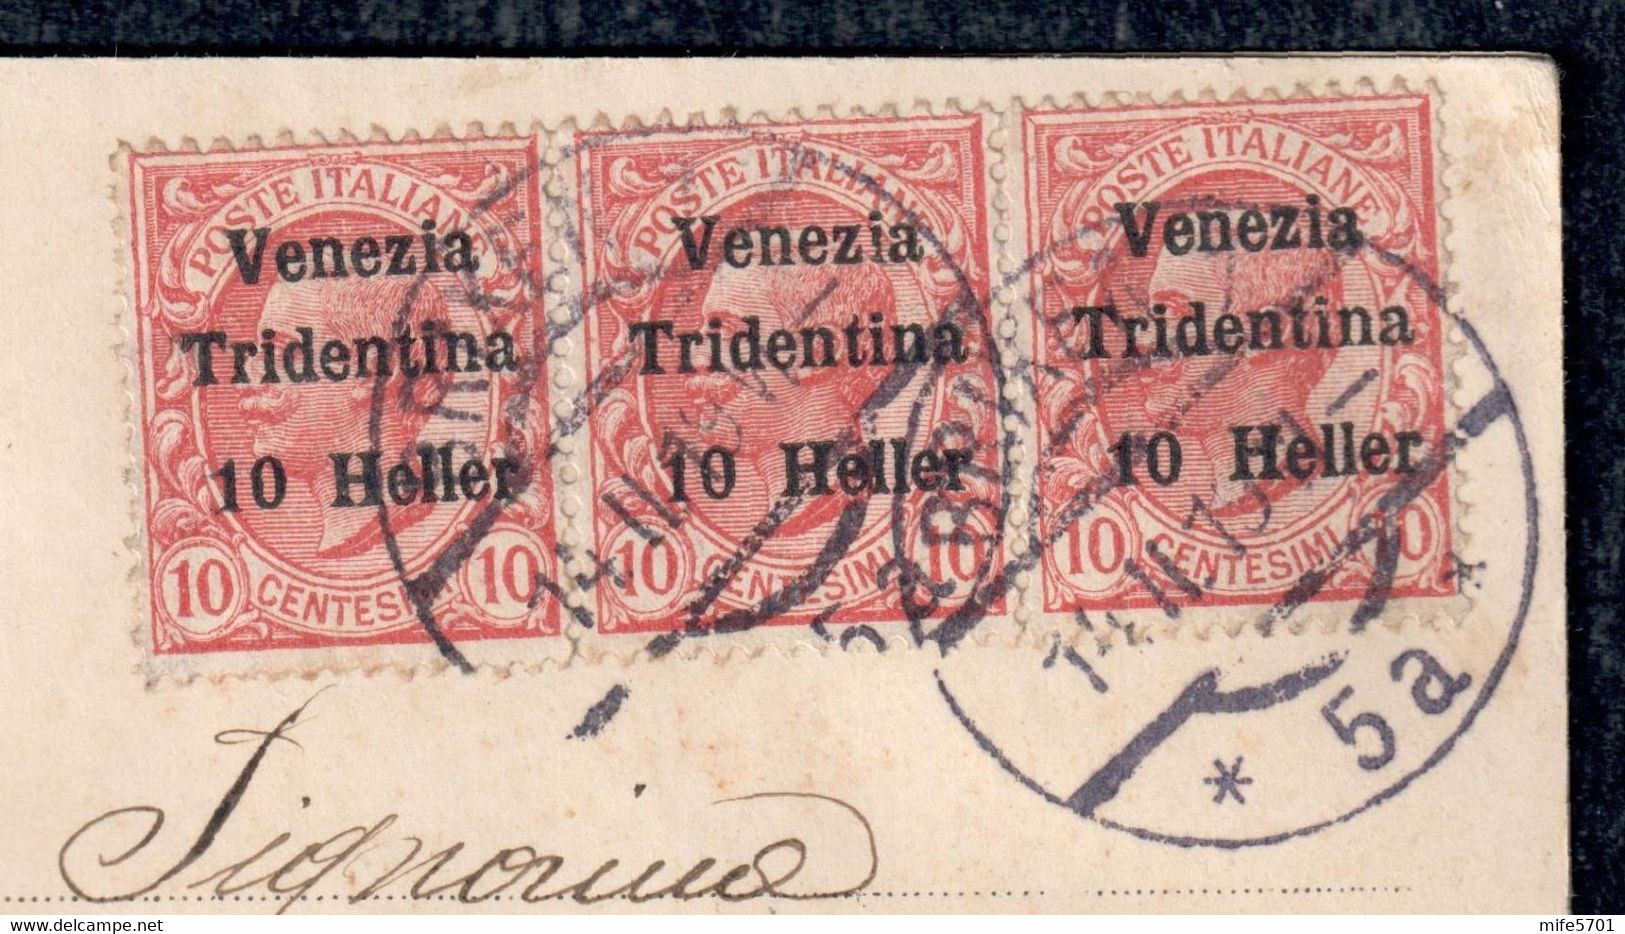 TERRE REDENTE 1918 TRENTINO ALTO ADIGE MICHETTI SOPR. 'VENEZIA TRIDENTINA' H. 10 SU C. 10 - BRIXEN - SASSONE 29 - Trentin